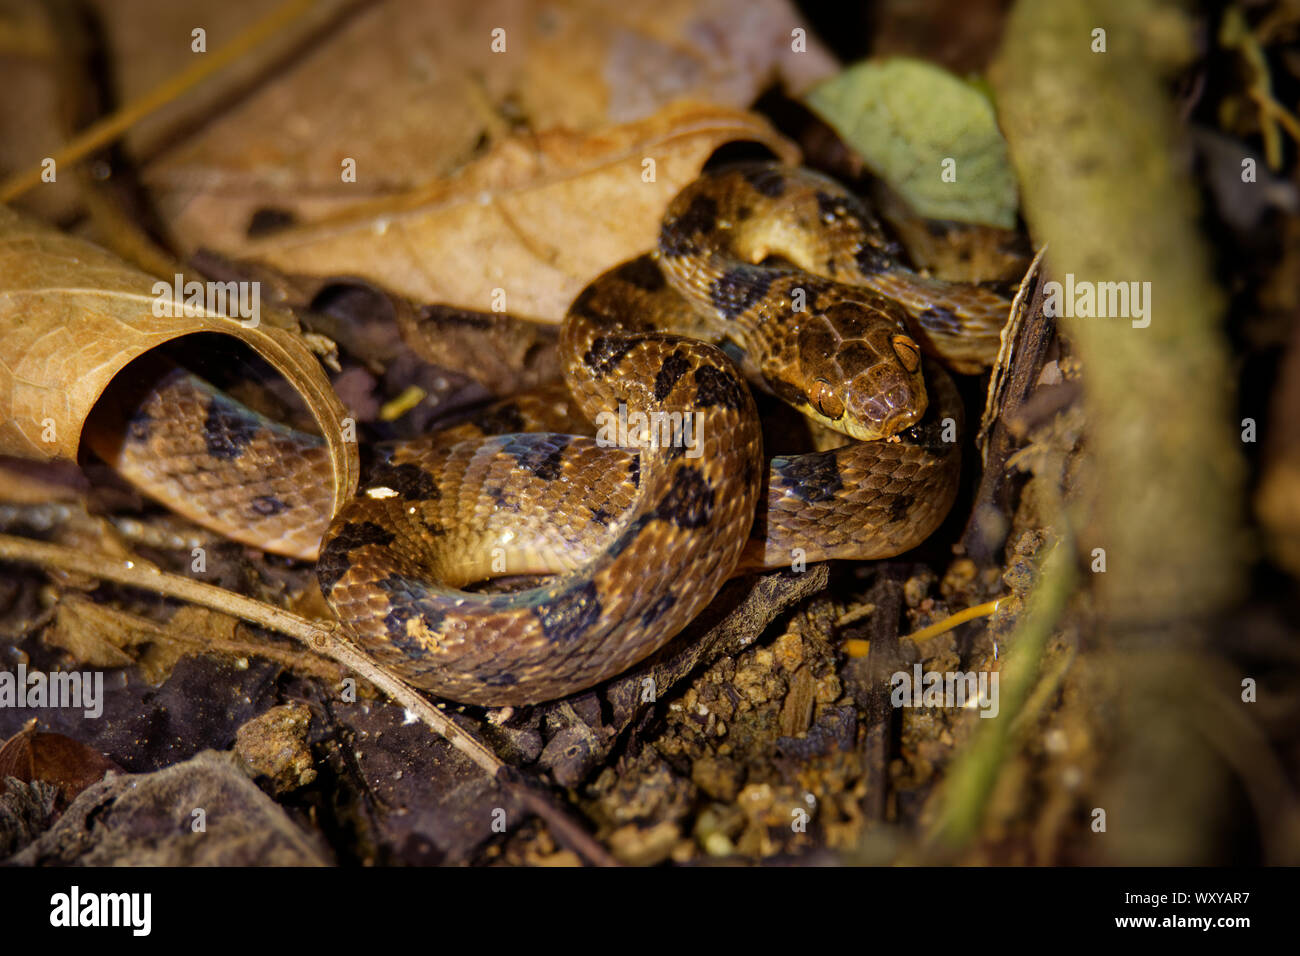 Norte de Cat-eyed Serpiente Leptodeira septentrionalis - especies de mediano tamaño, ligeramente serpiente venenosa, encuentra desde el sur de Texas hasta el norte de Colombia, Foto de stock